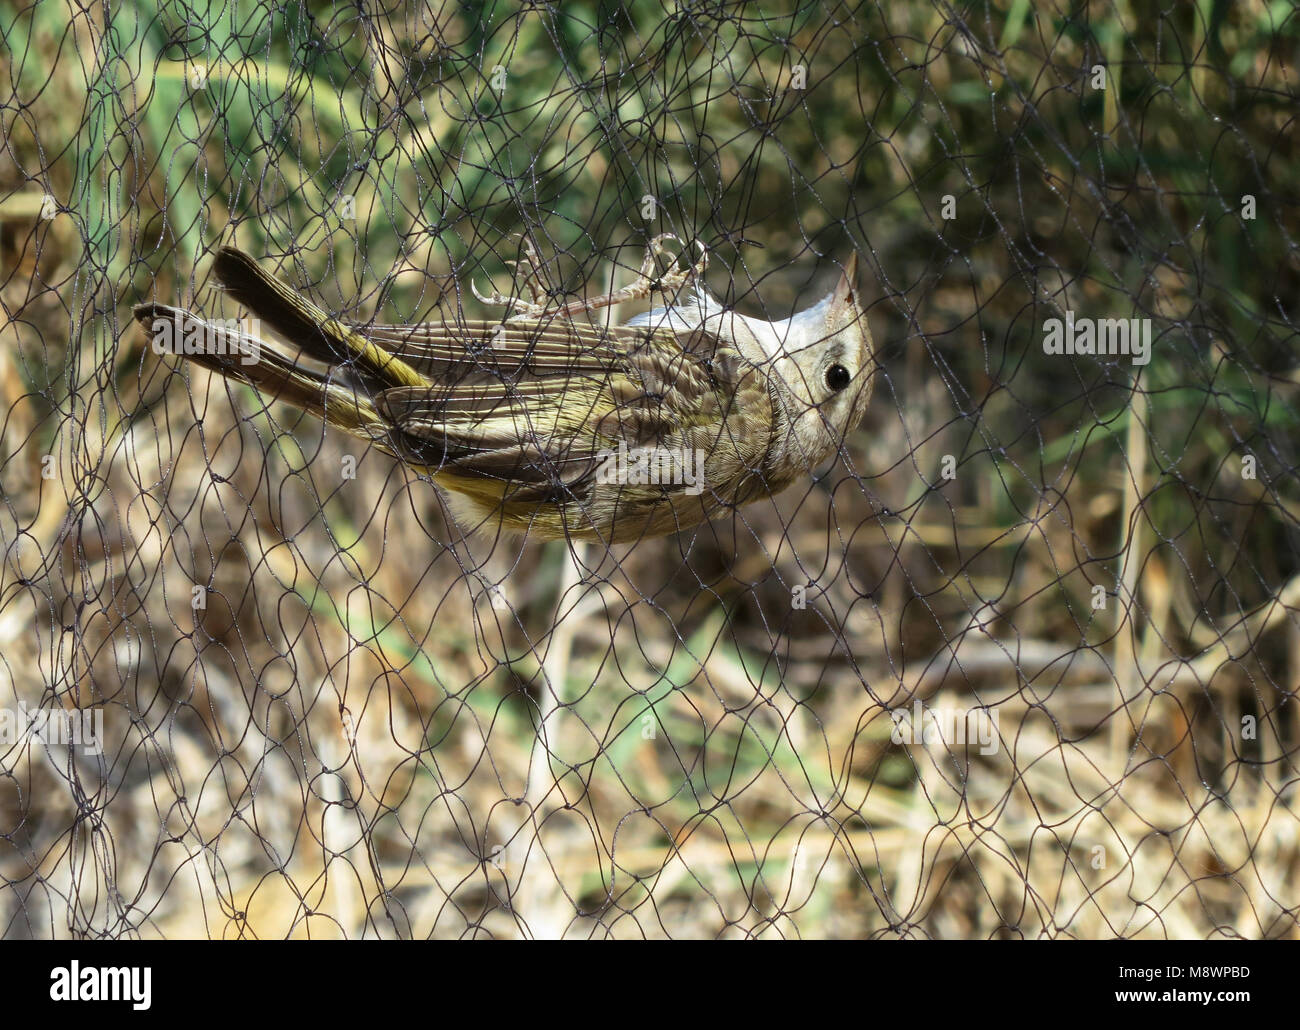 Balkanbergfluiter gevangen in een mistnest; Balkan's Warbler caught in a mistnest Stock Photo